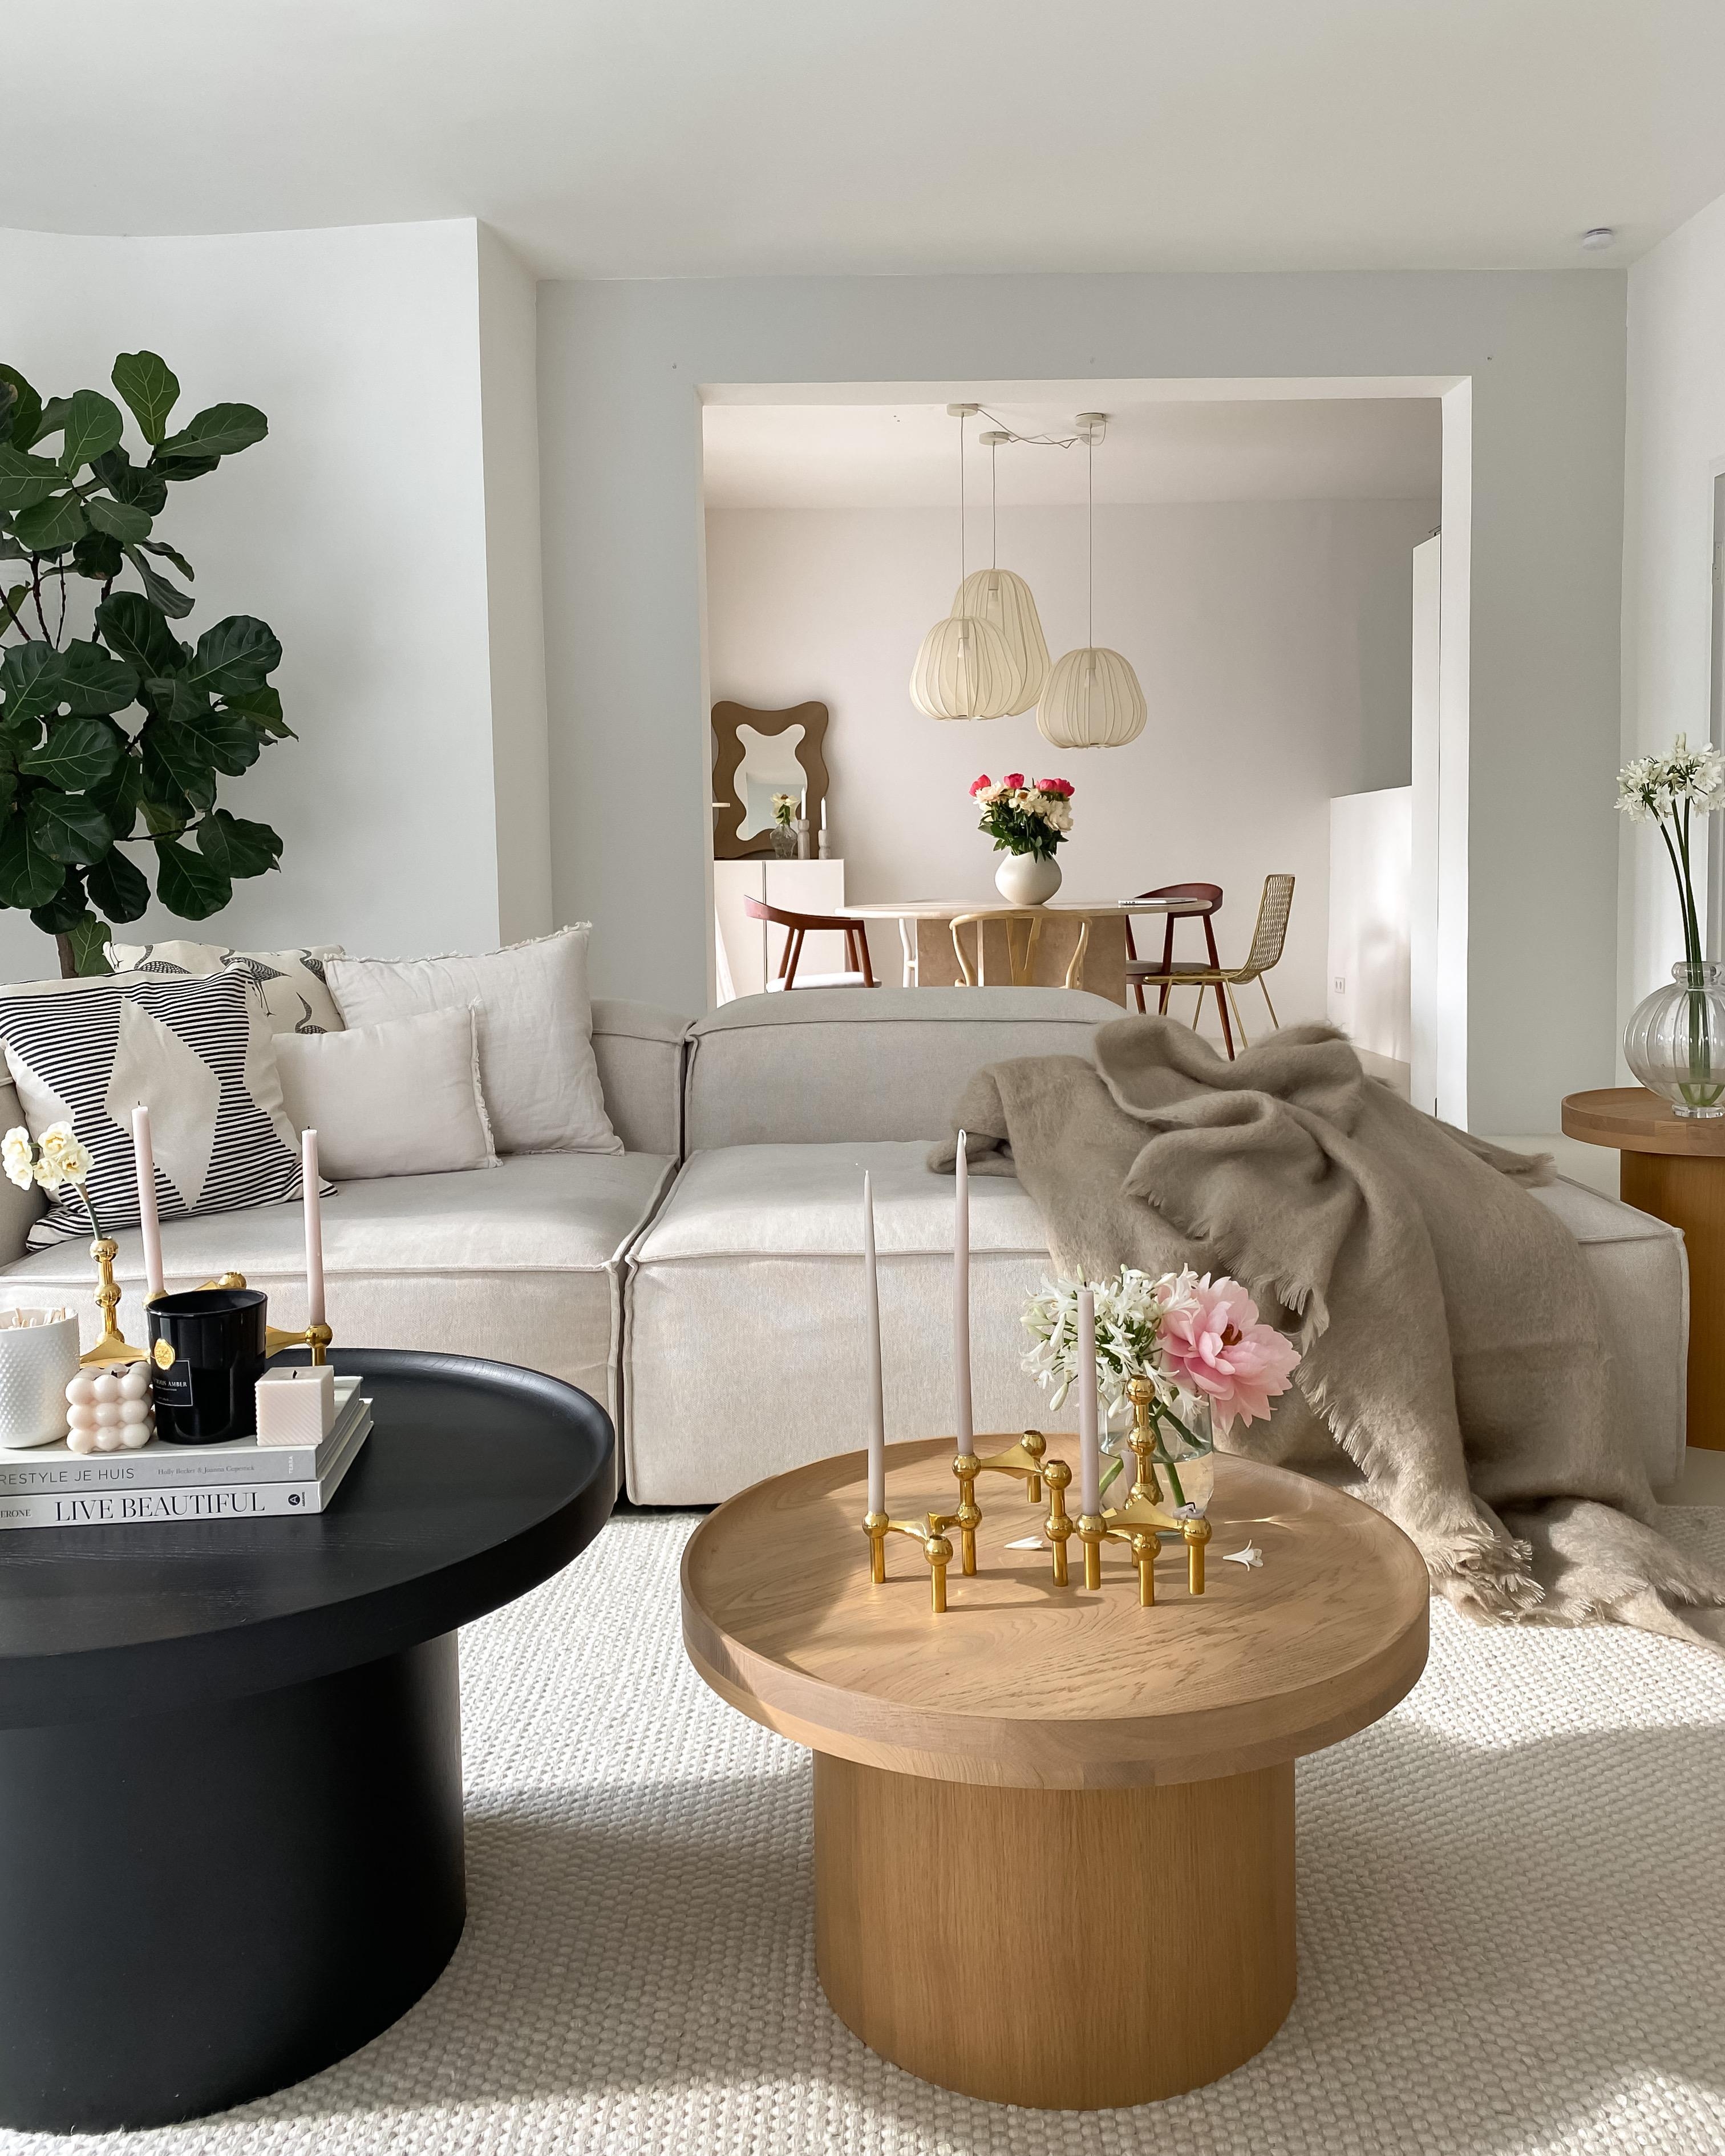 #wohnzimmer #couchliebt #beigeliving #springvibes #design #nordicinterior #mynordicroom #nordichome